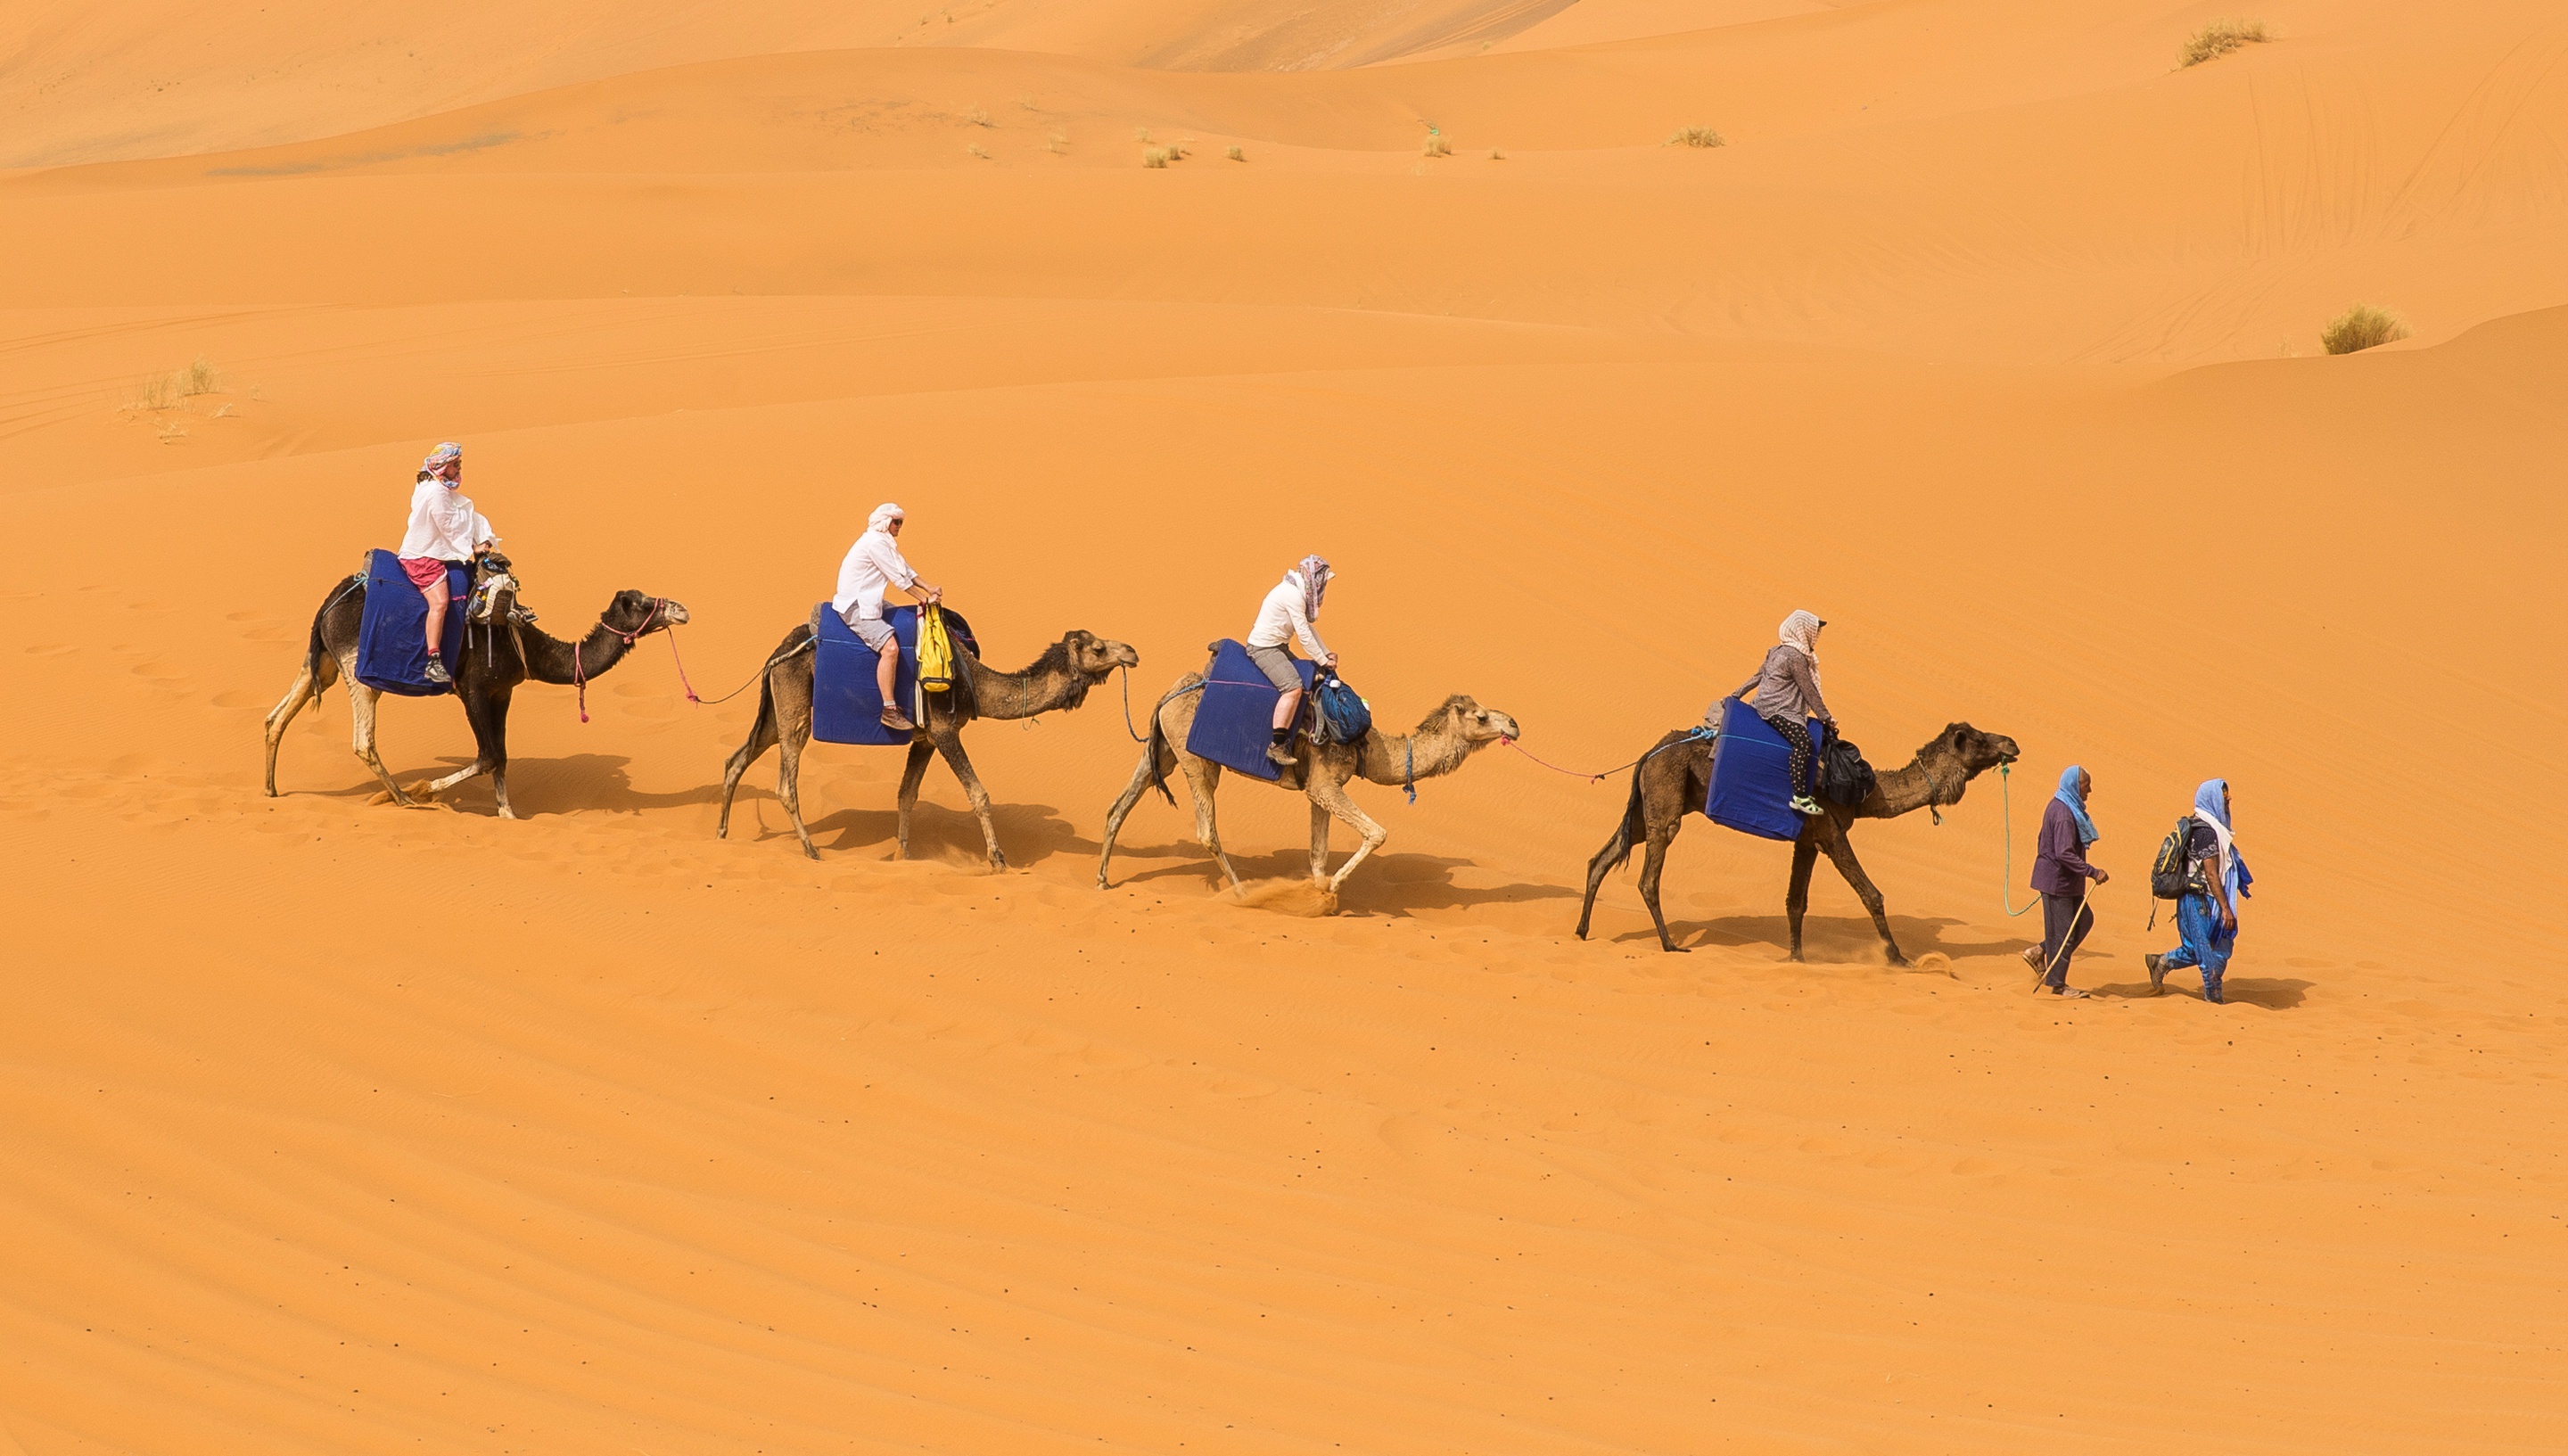 Покажи караван. Мехари верблюд. Бедуин на верблюде. Караван с верблюдами в пустыне. Бедуин с верблюдом в пустыне.